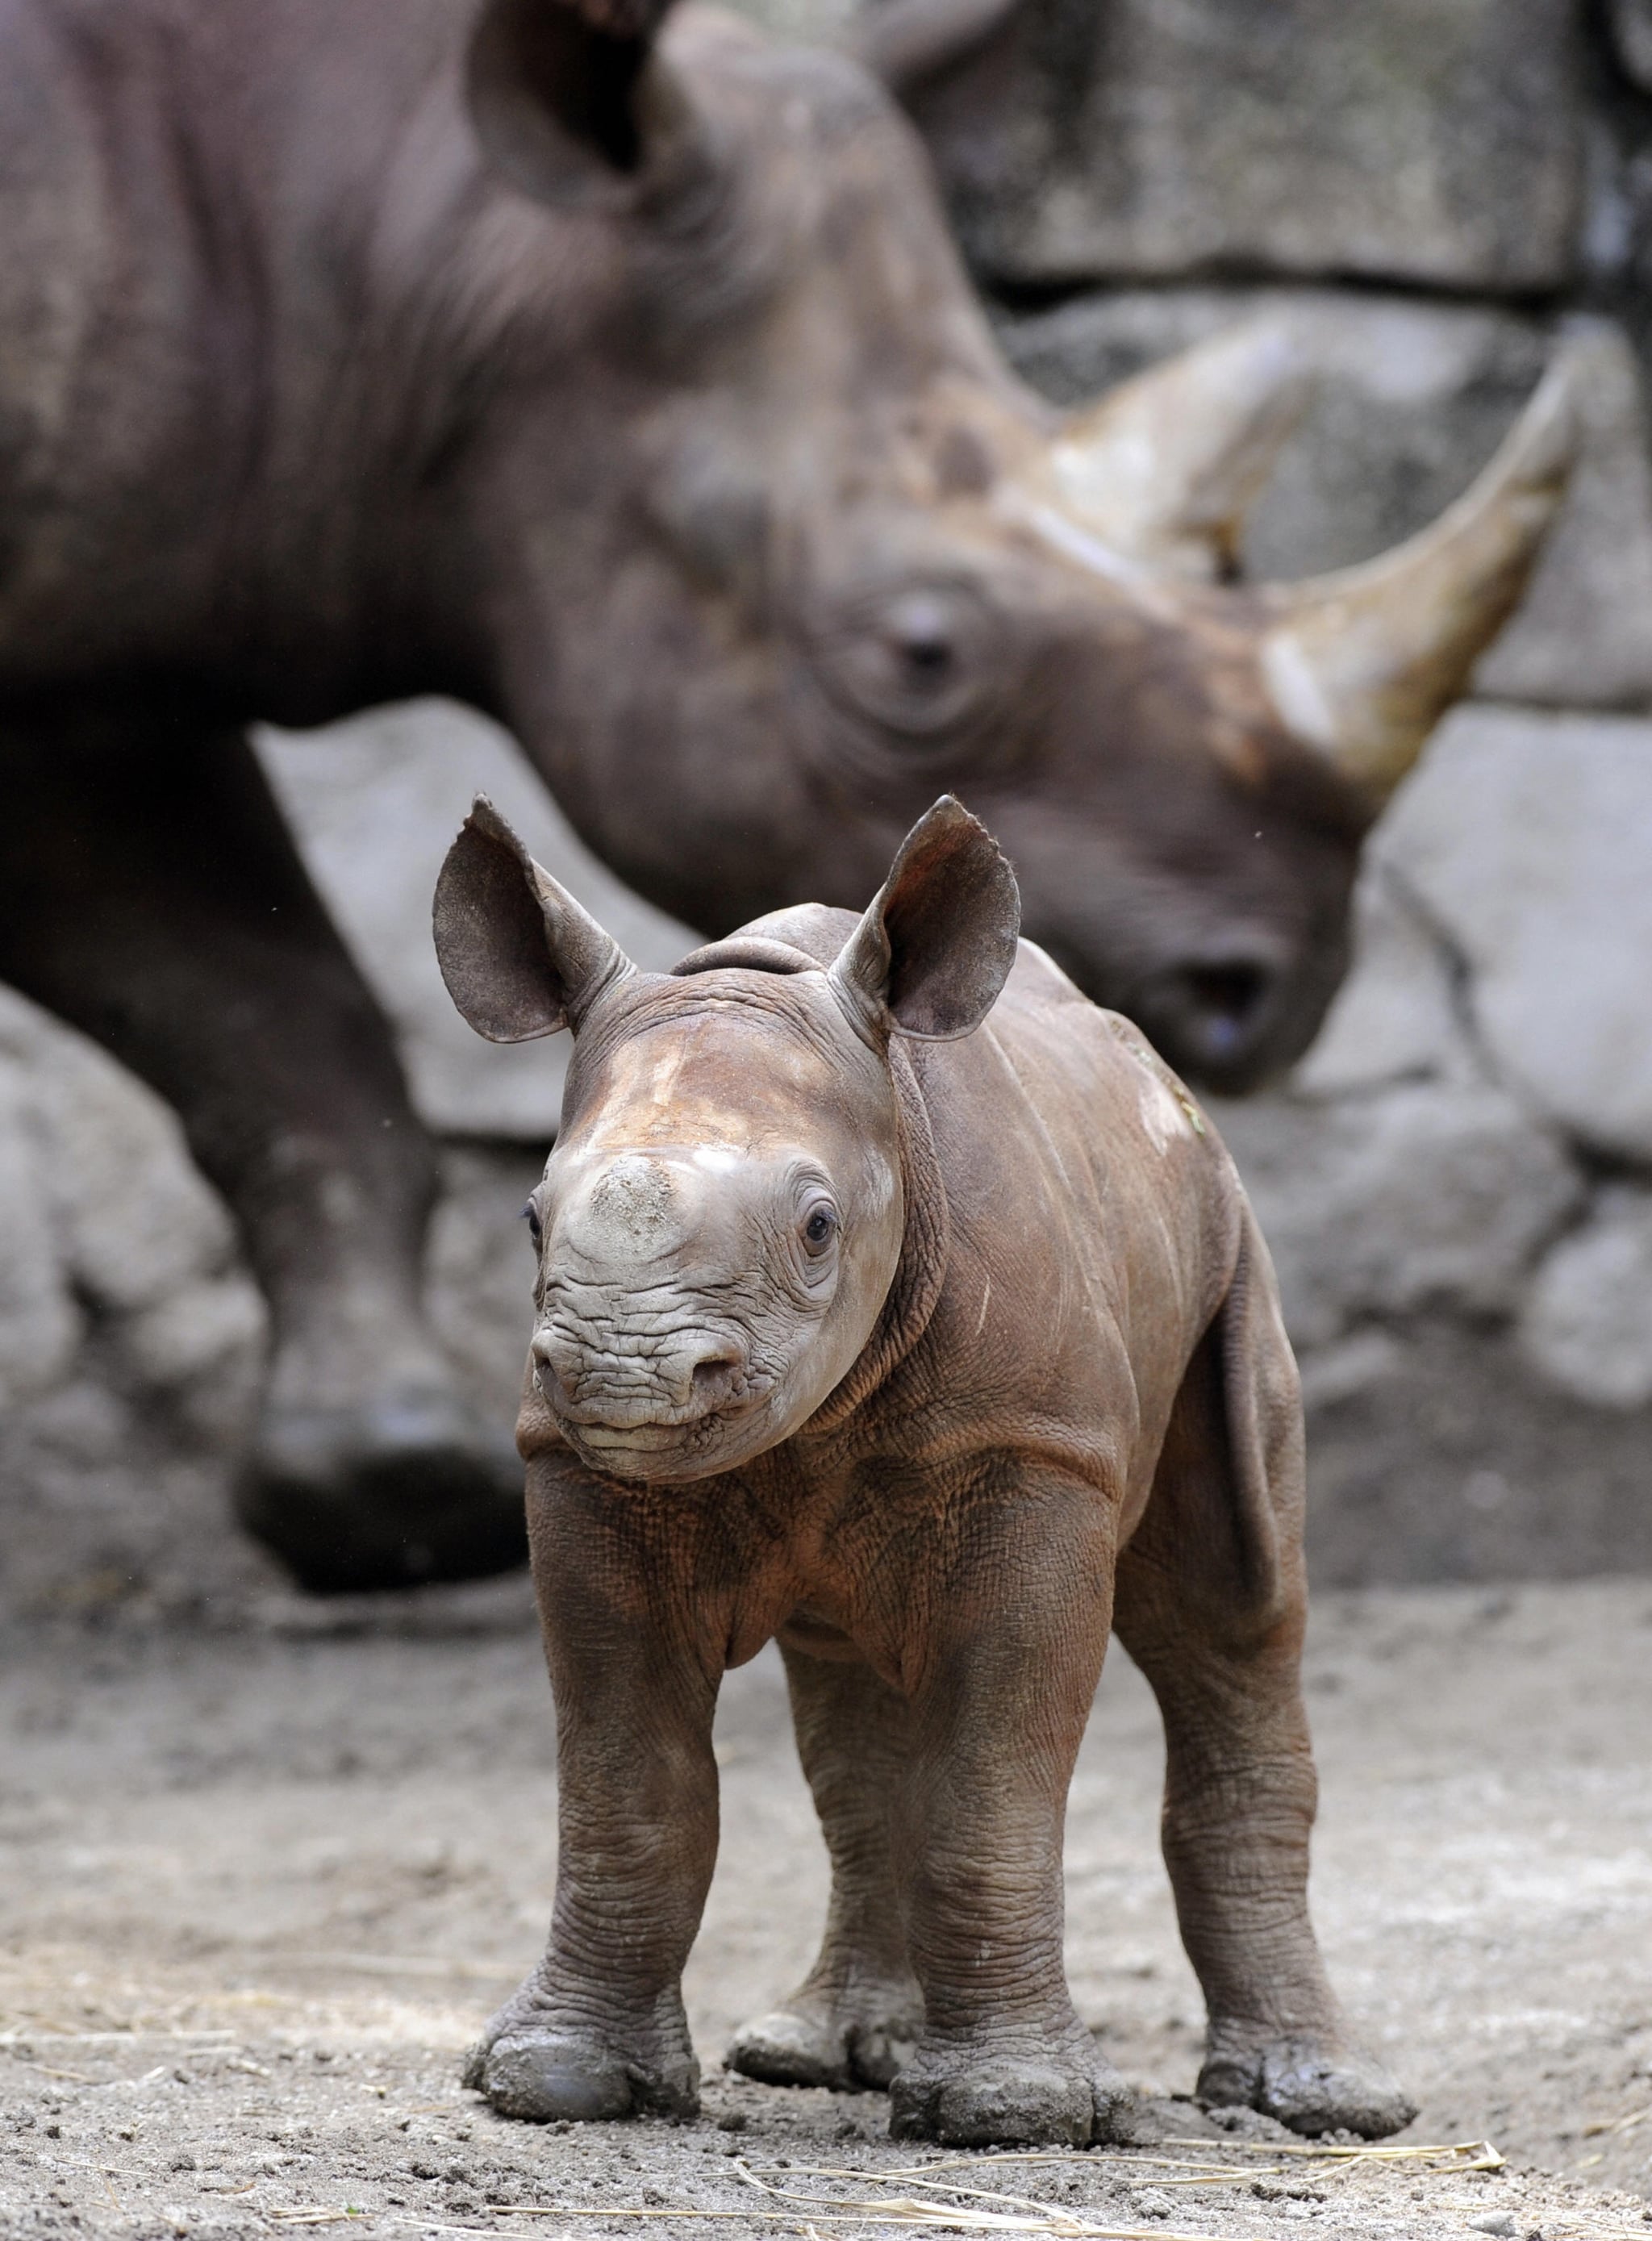 Baby Black Rhino at Tokyo's Ueno Zoo!